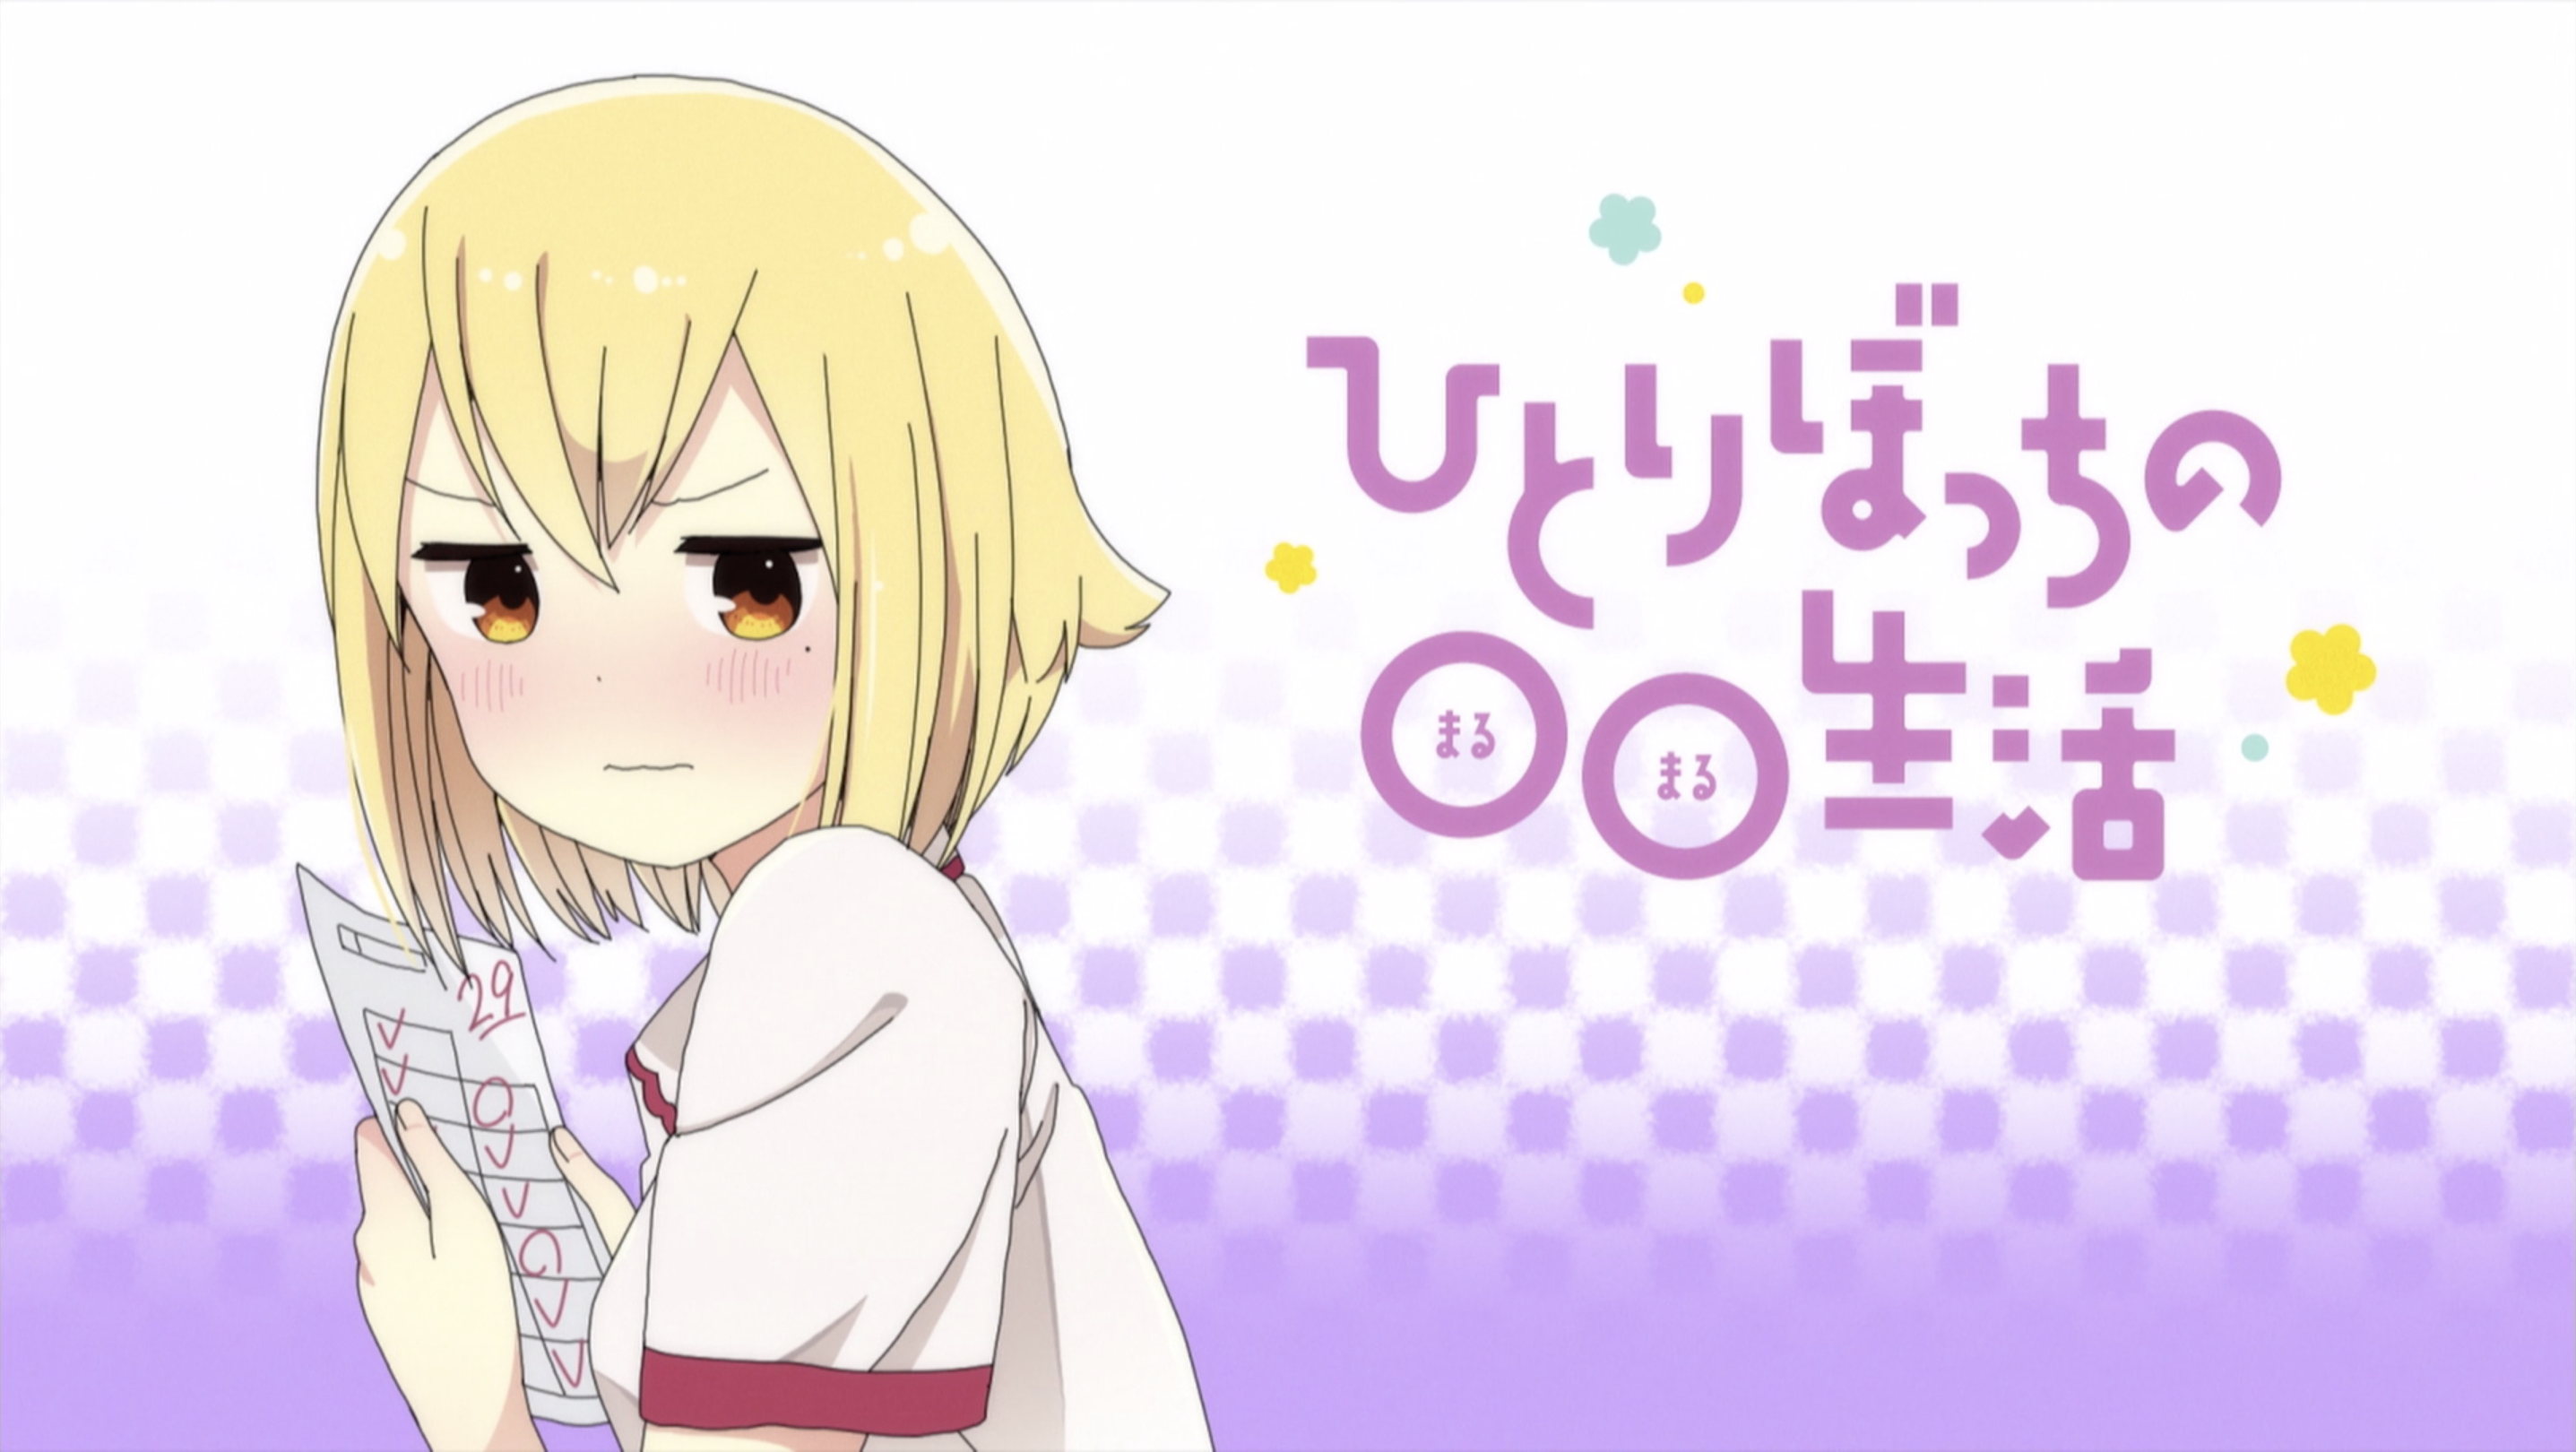 Hitori Bocchi no ○○ Seikatsu - Episode 5 discussion : r/anime